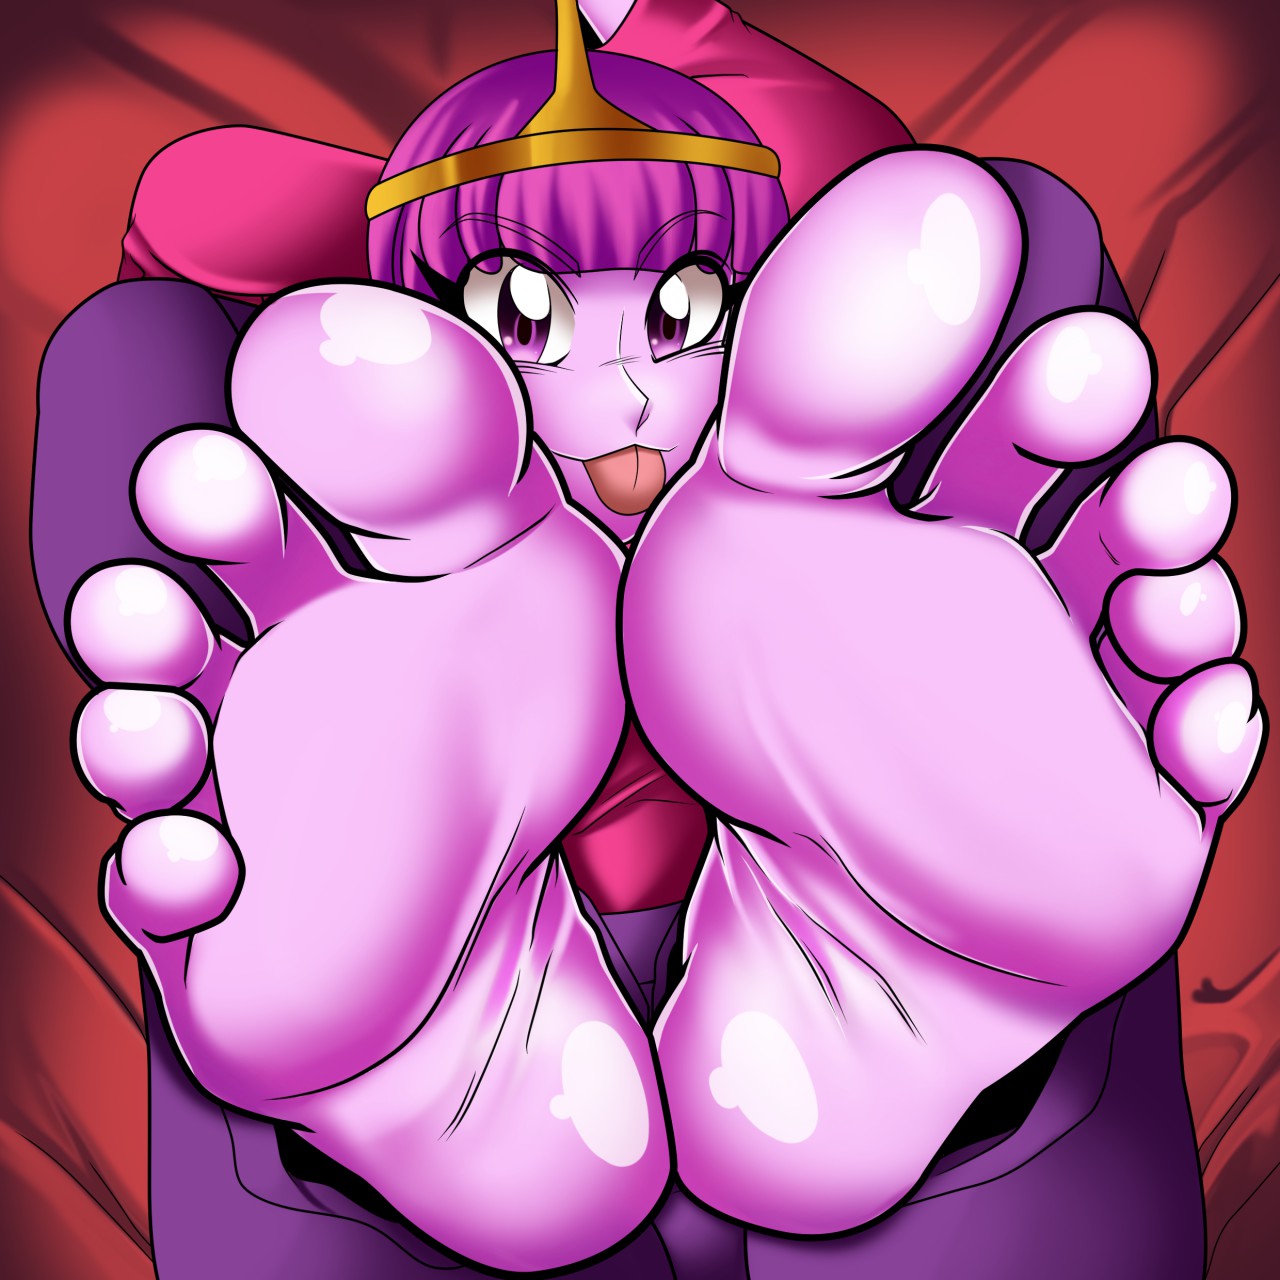 Princess bubblegum footjob